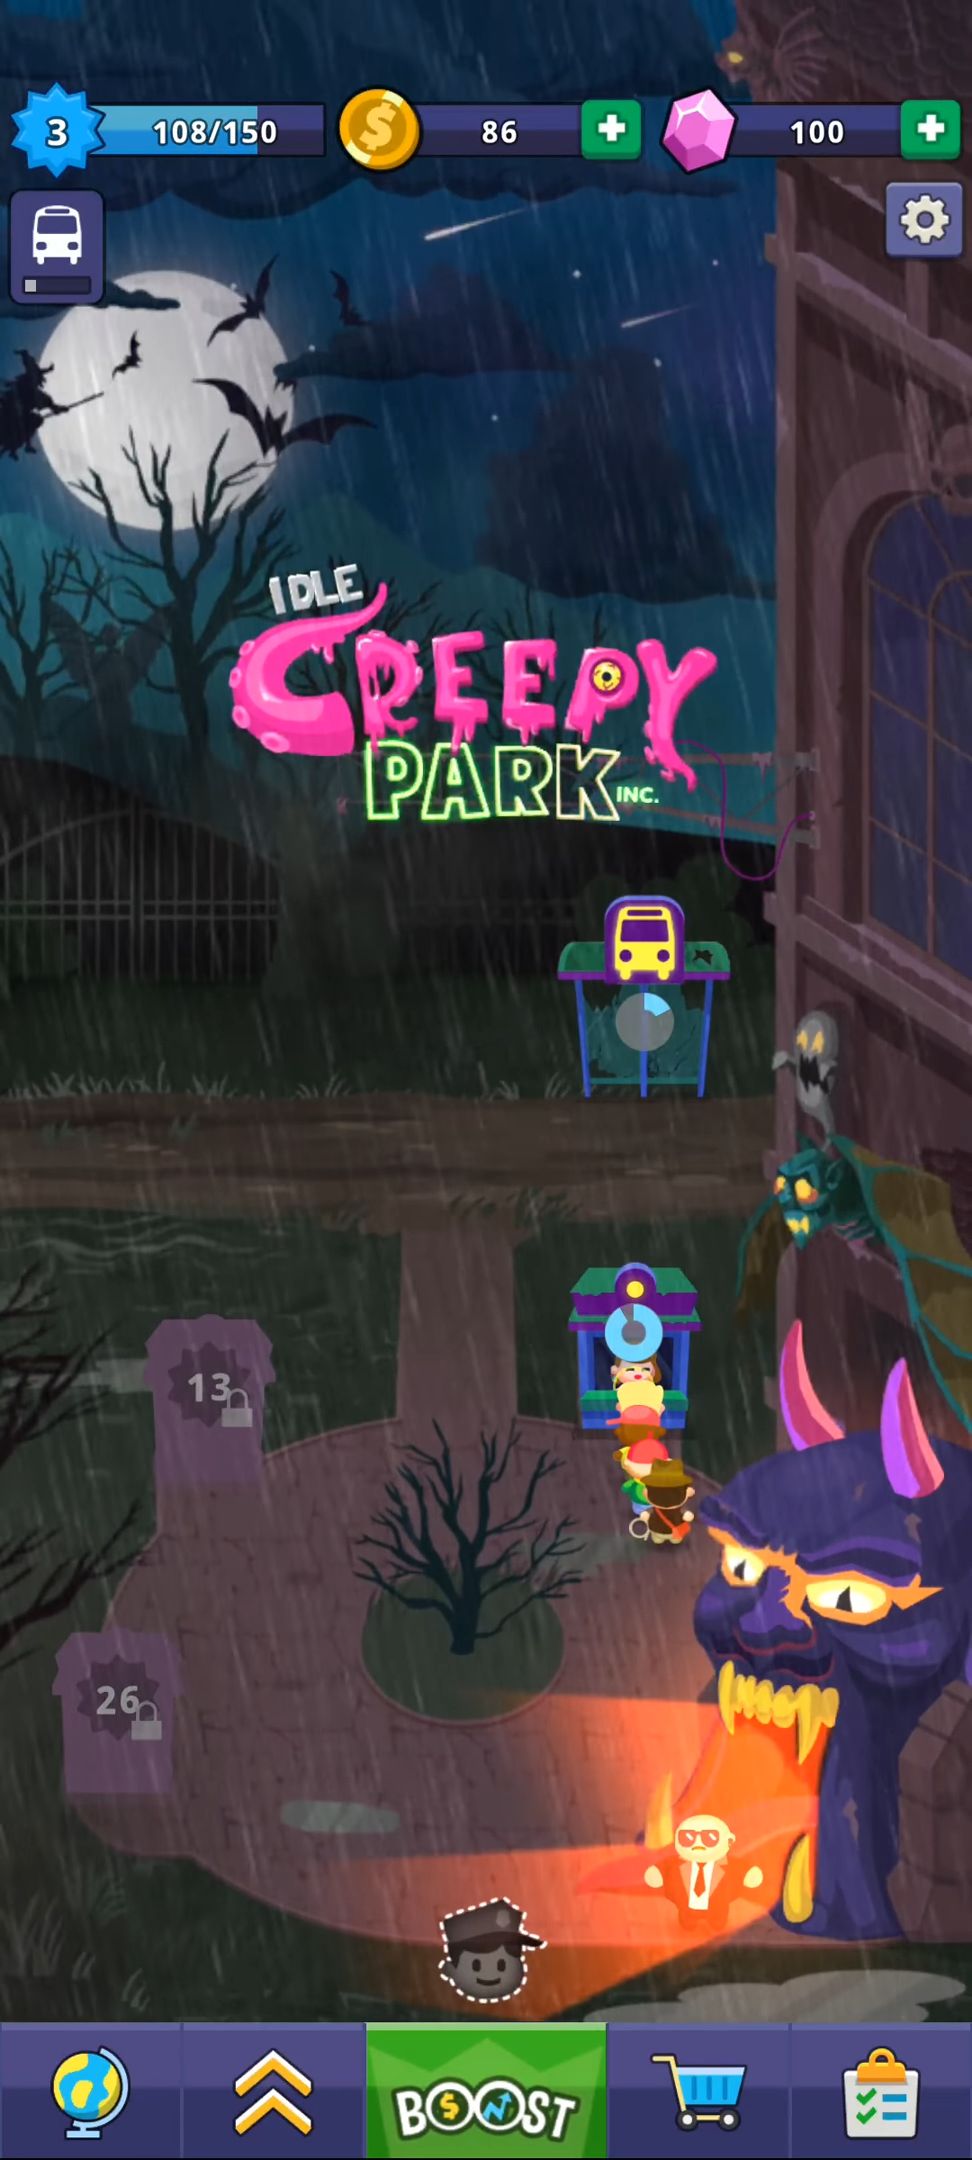 Download Idle Creepy Park Inc. für Android kostenlos.